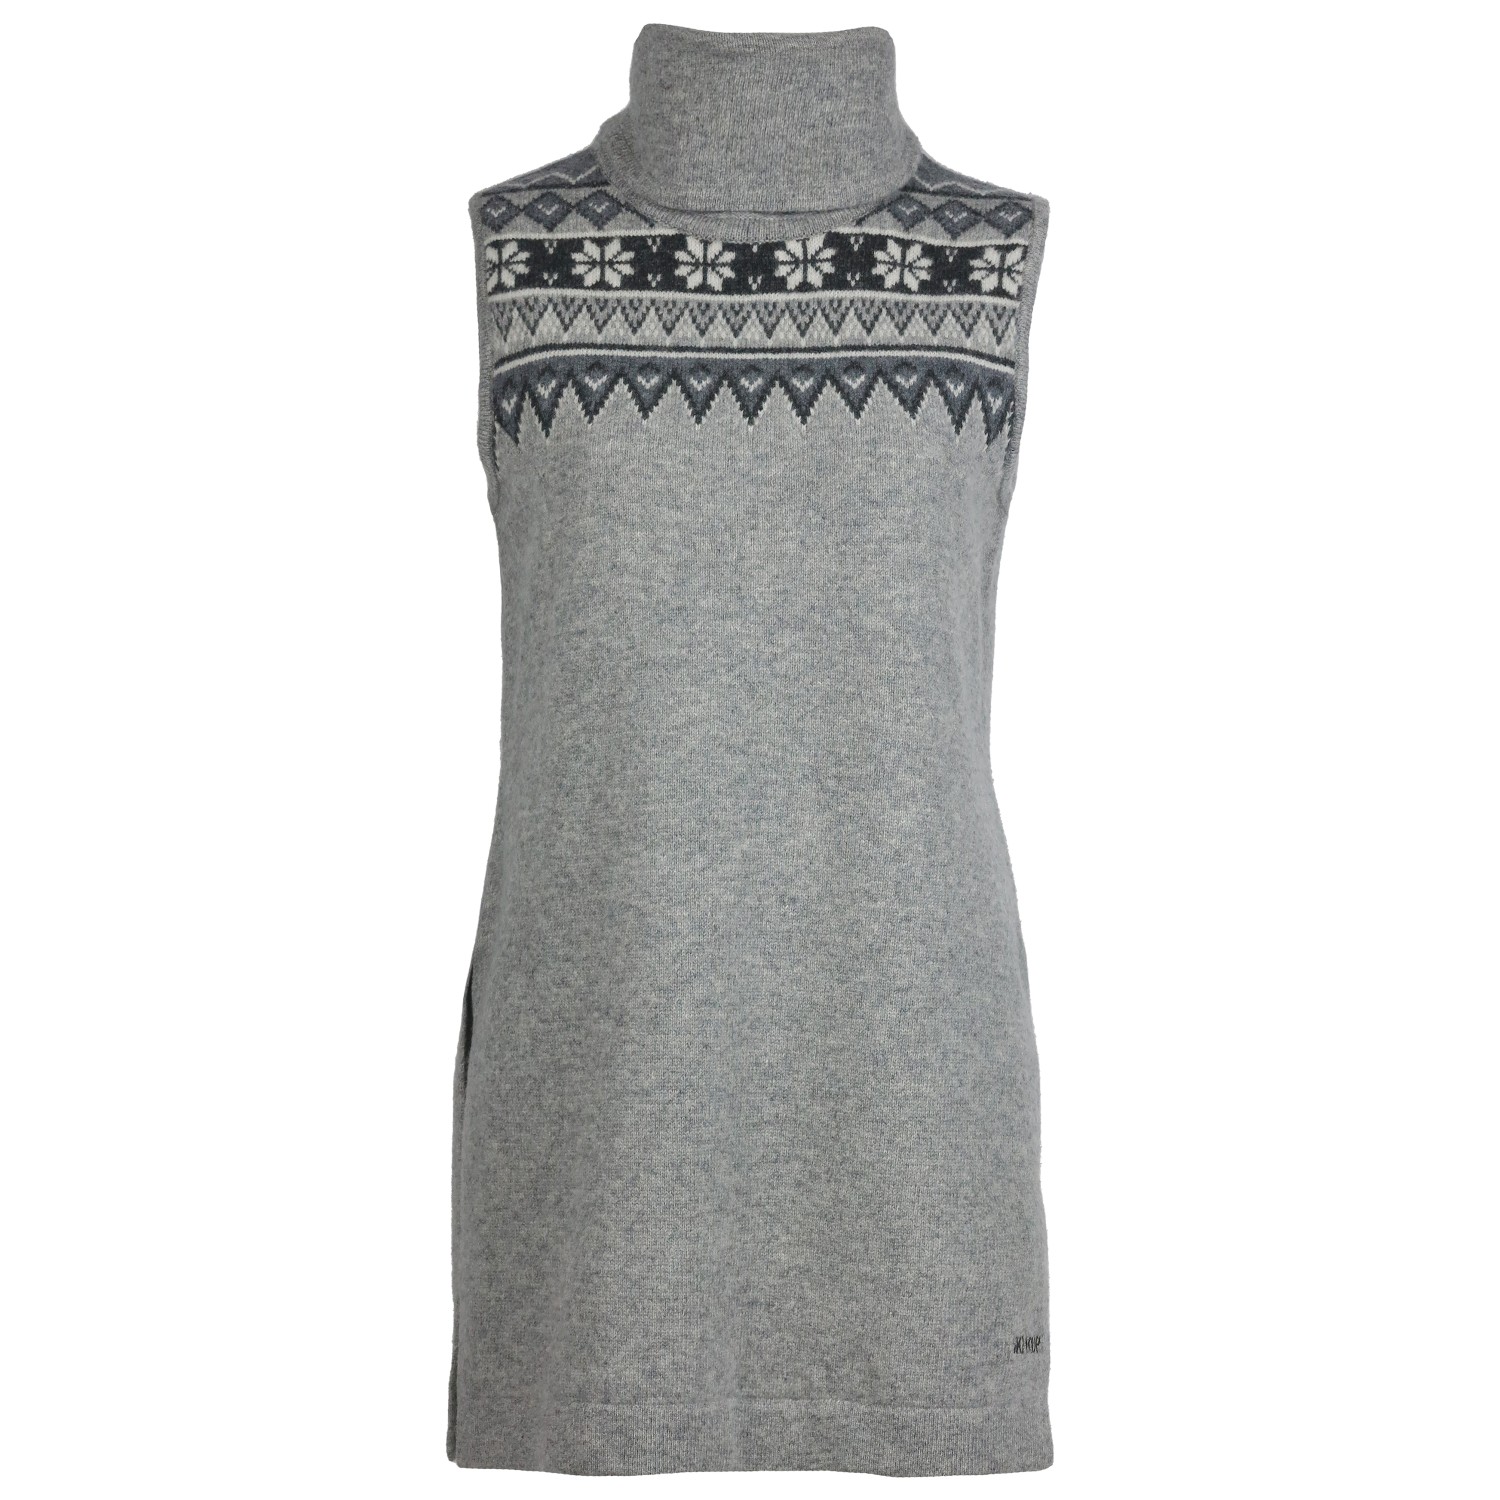 Платье Skhoop Women's Scandinavian Long Vest, серый мужской жилет свитер 2021 модный вязаный свободный свитер винтажный мужской жилет модный свитер топ мужская повседневная одежда